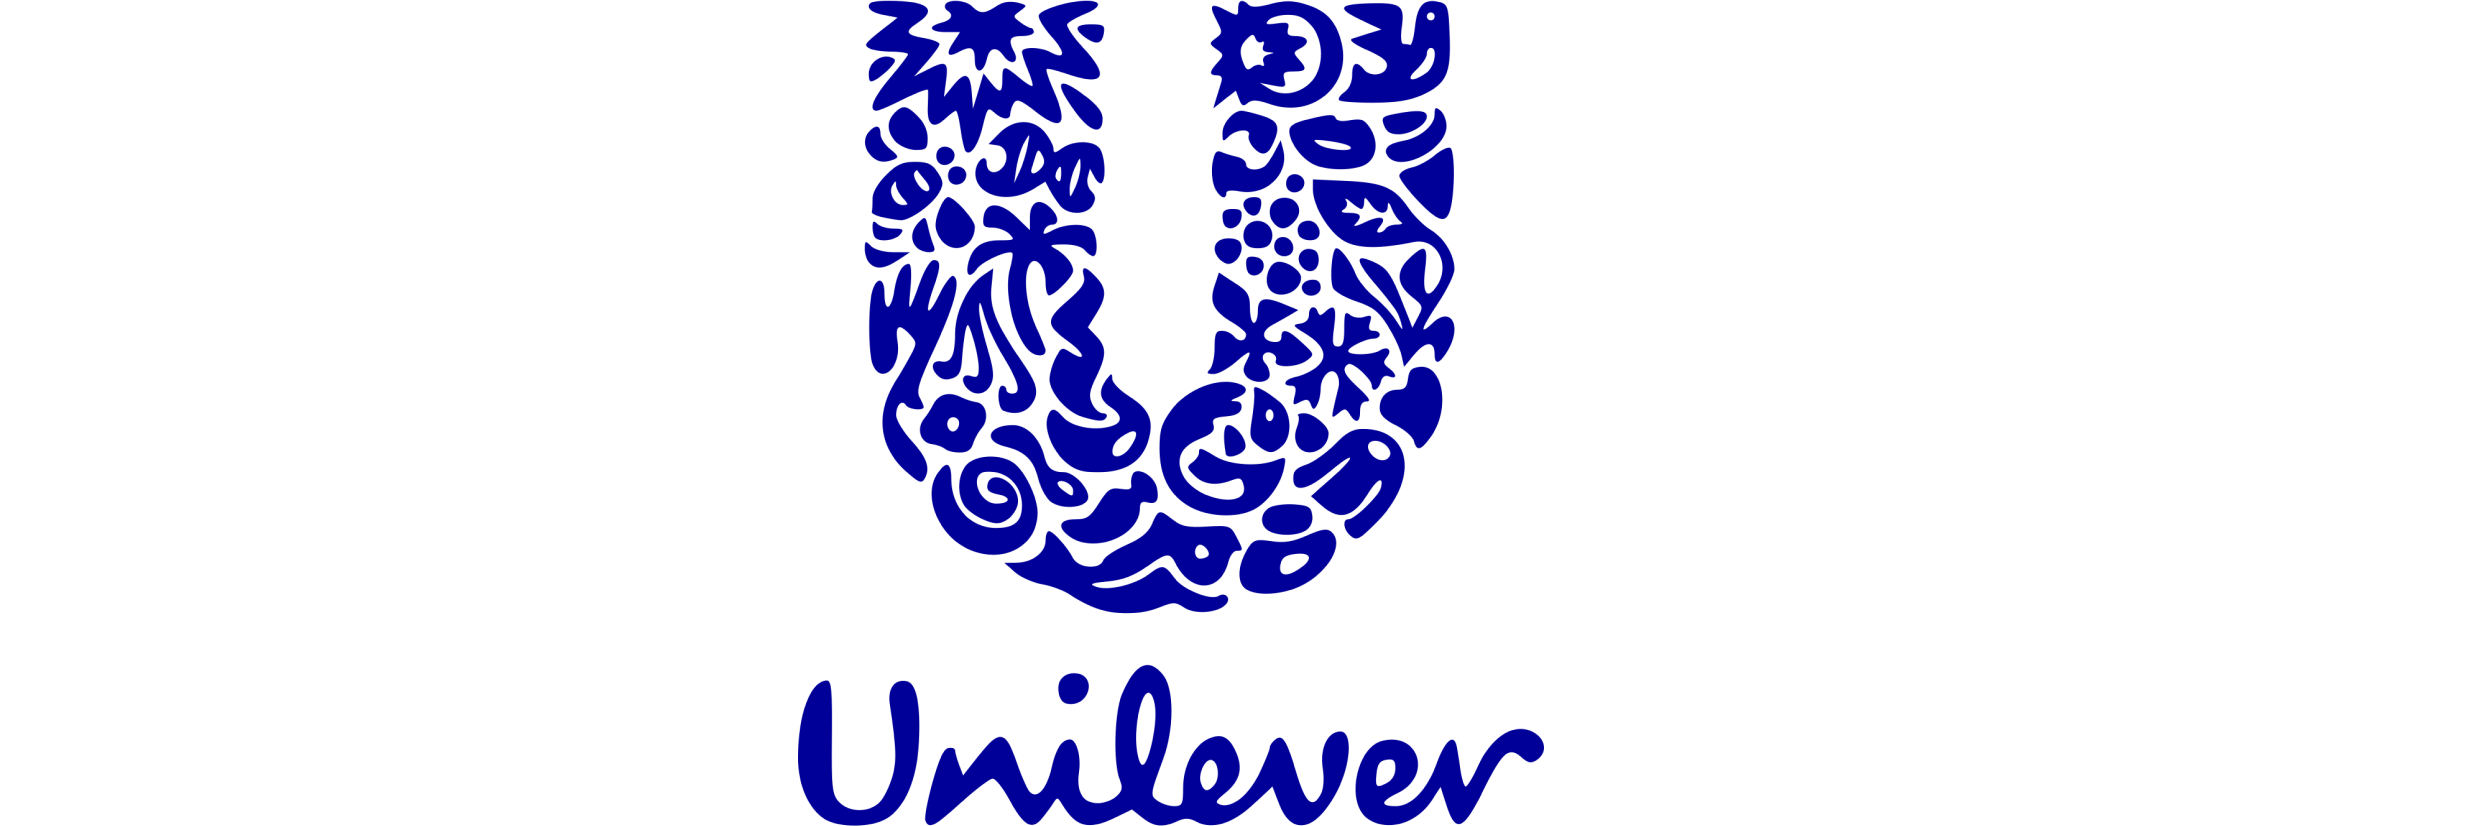 Machine Learning (ML) ile Unilever tamamen satış öngörümüne geçmeyi başardı